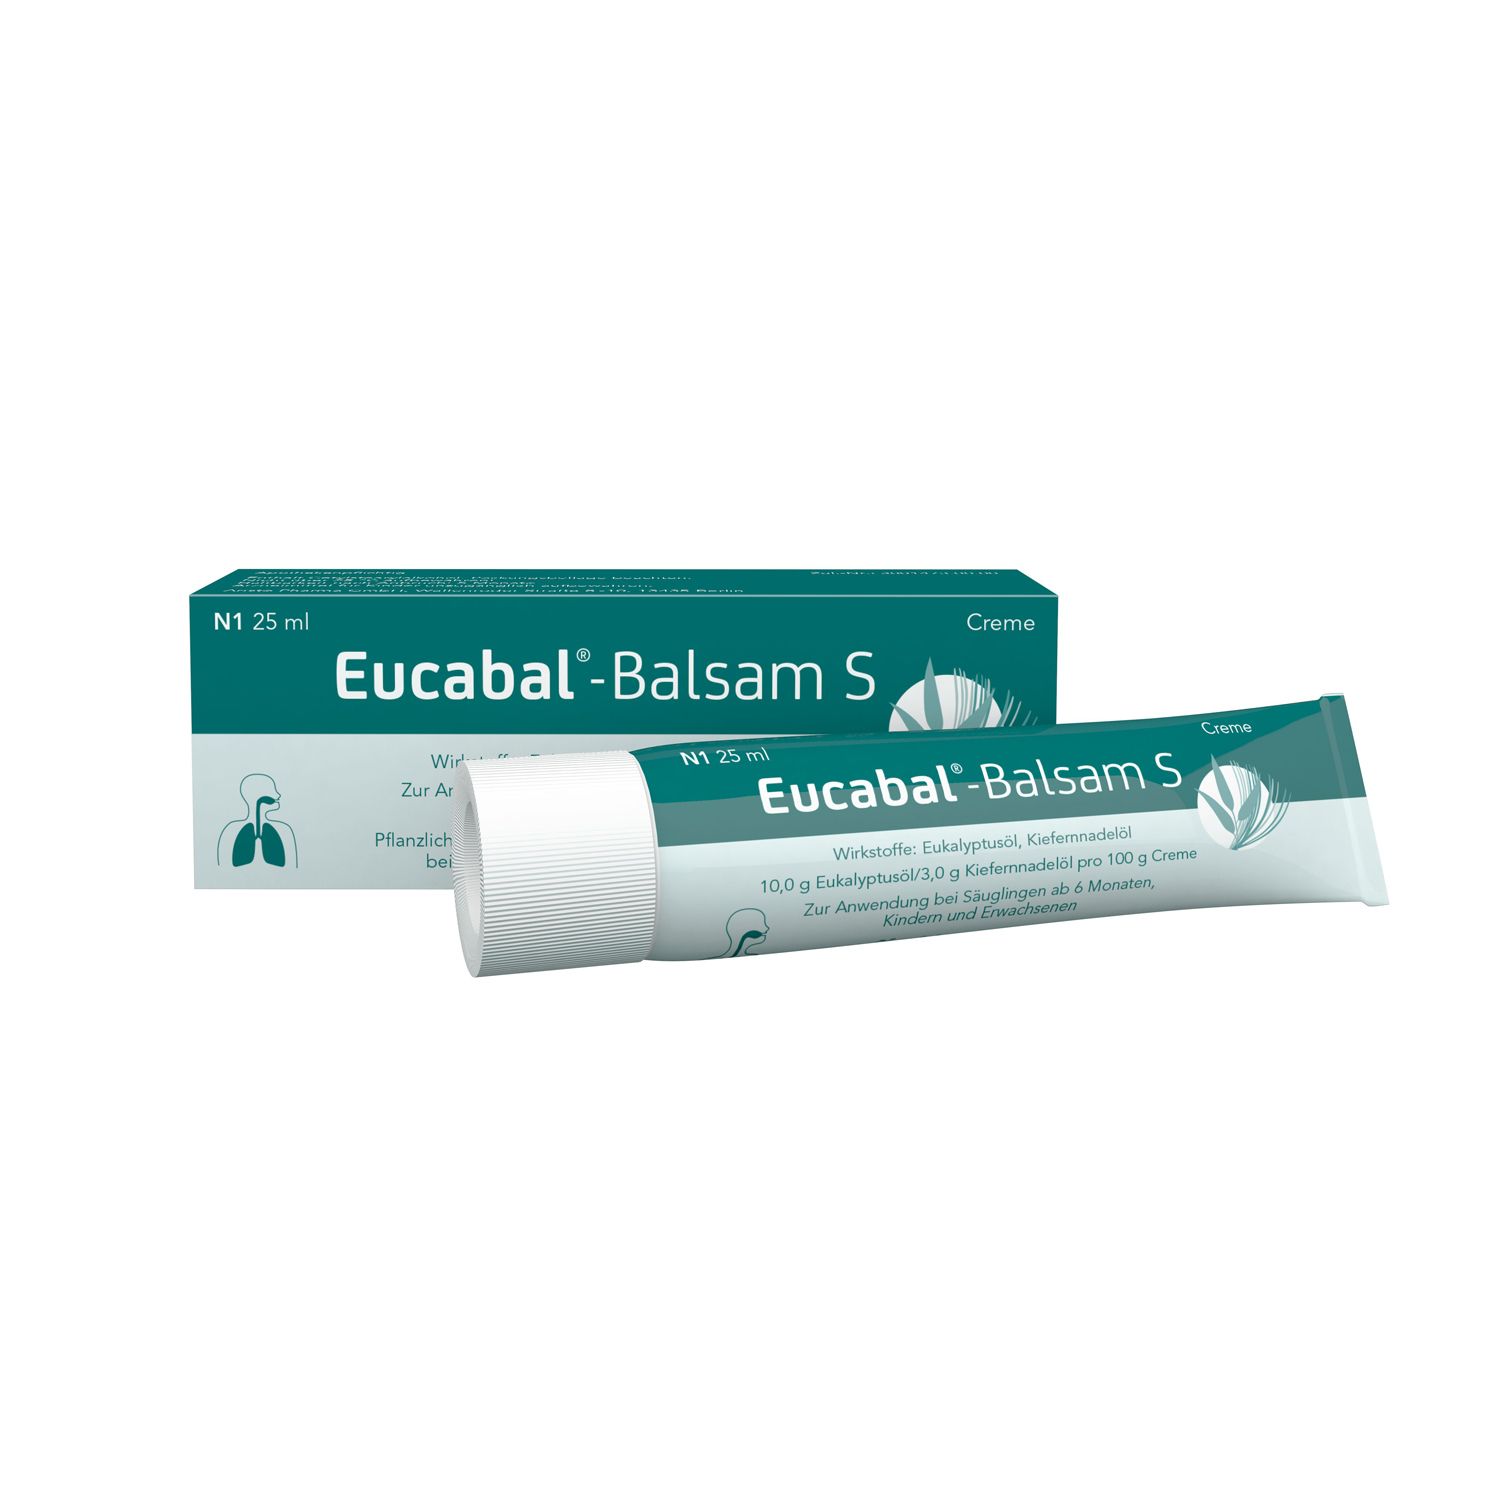 Eucabal® Balsam S